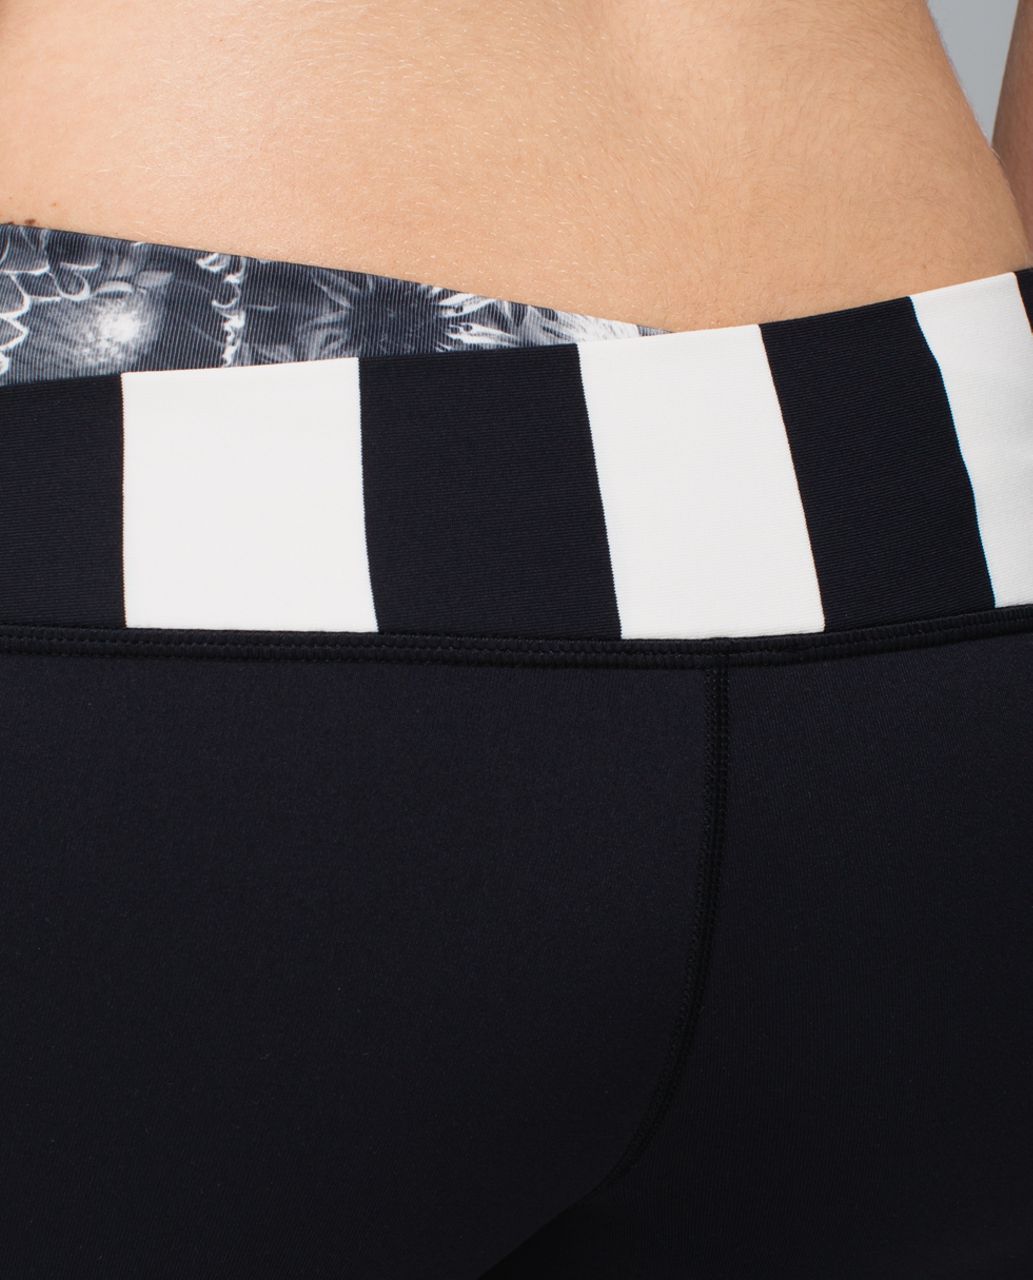 Lululemon Astro Pant *Full-On Luon (Regular) - Black / Flowabunga Black Angel Wing / Steep Stripe Black Horizontal